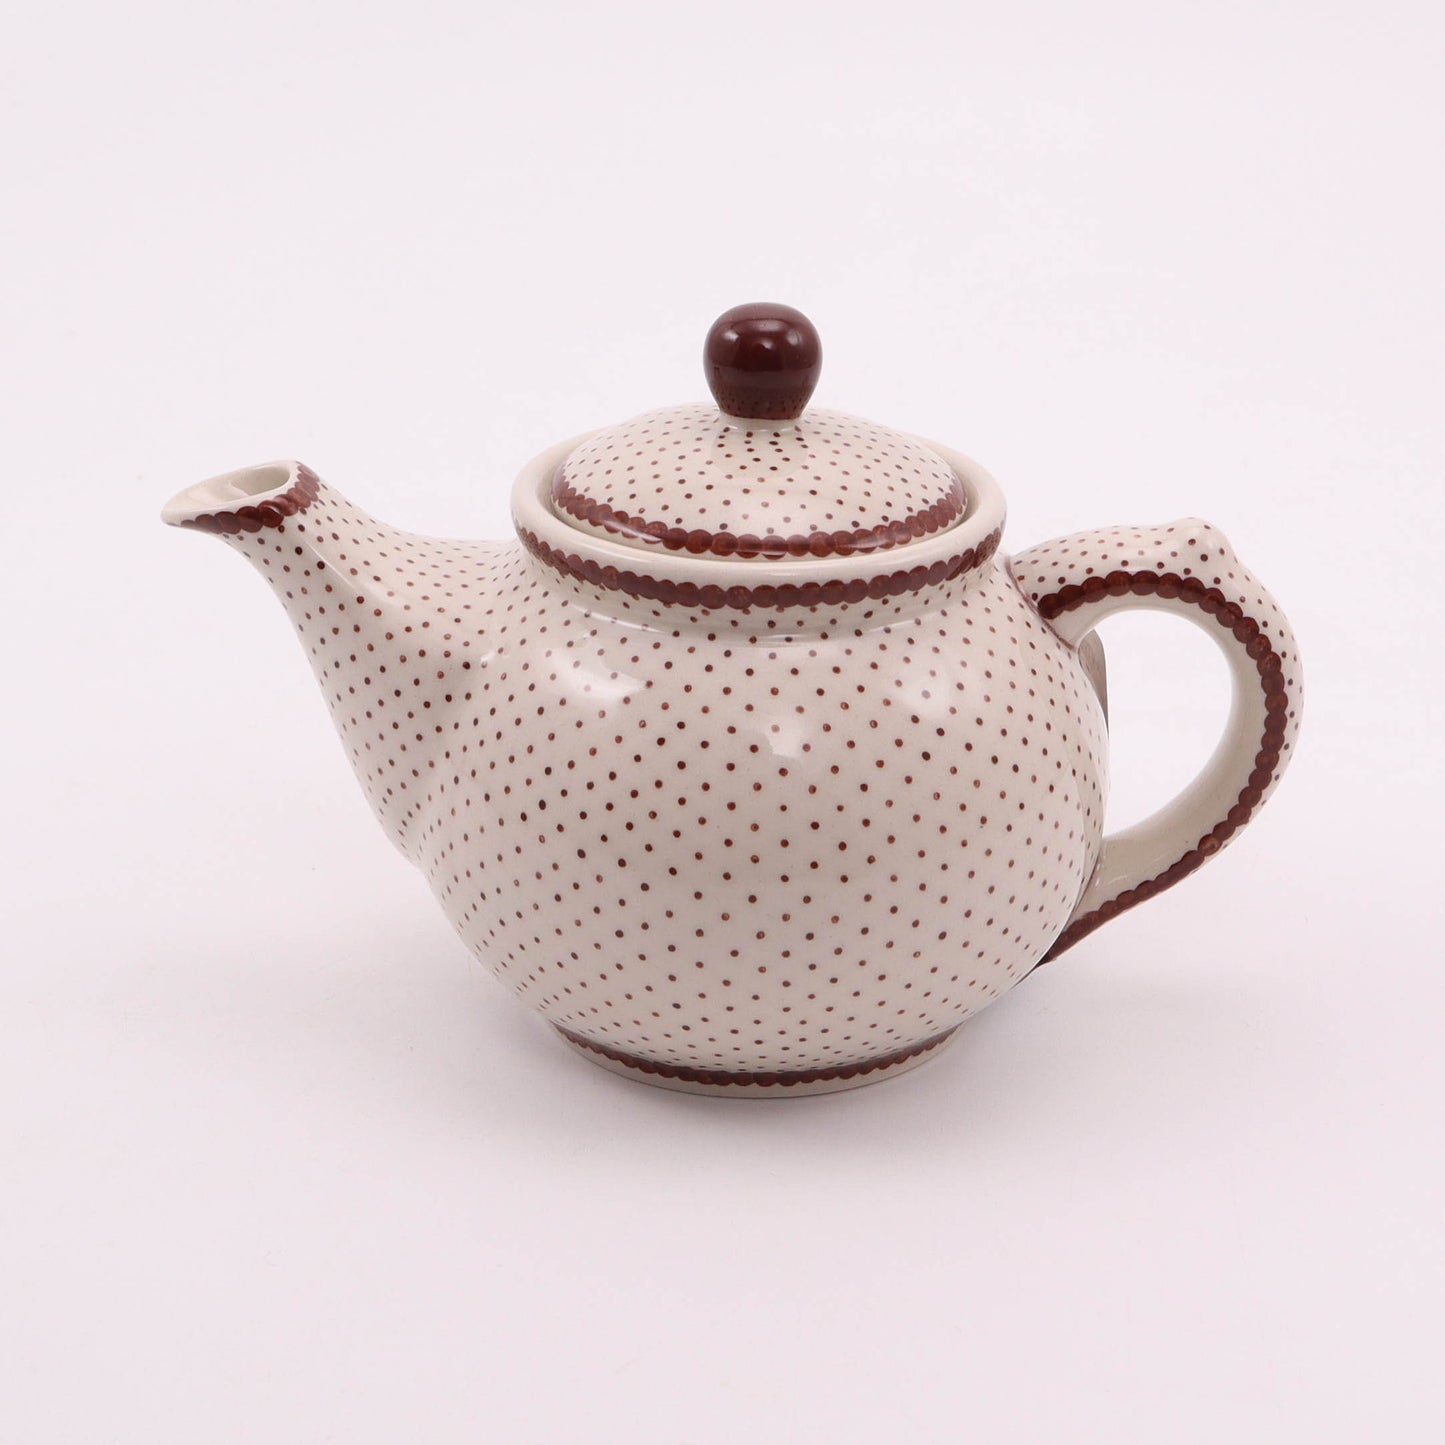 14oz Teapot. Pattern: Gingerbread